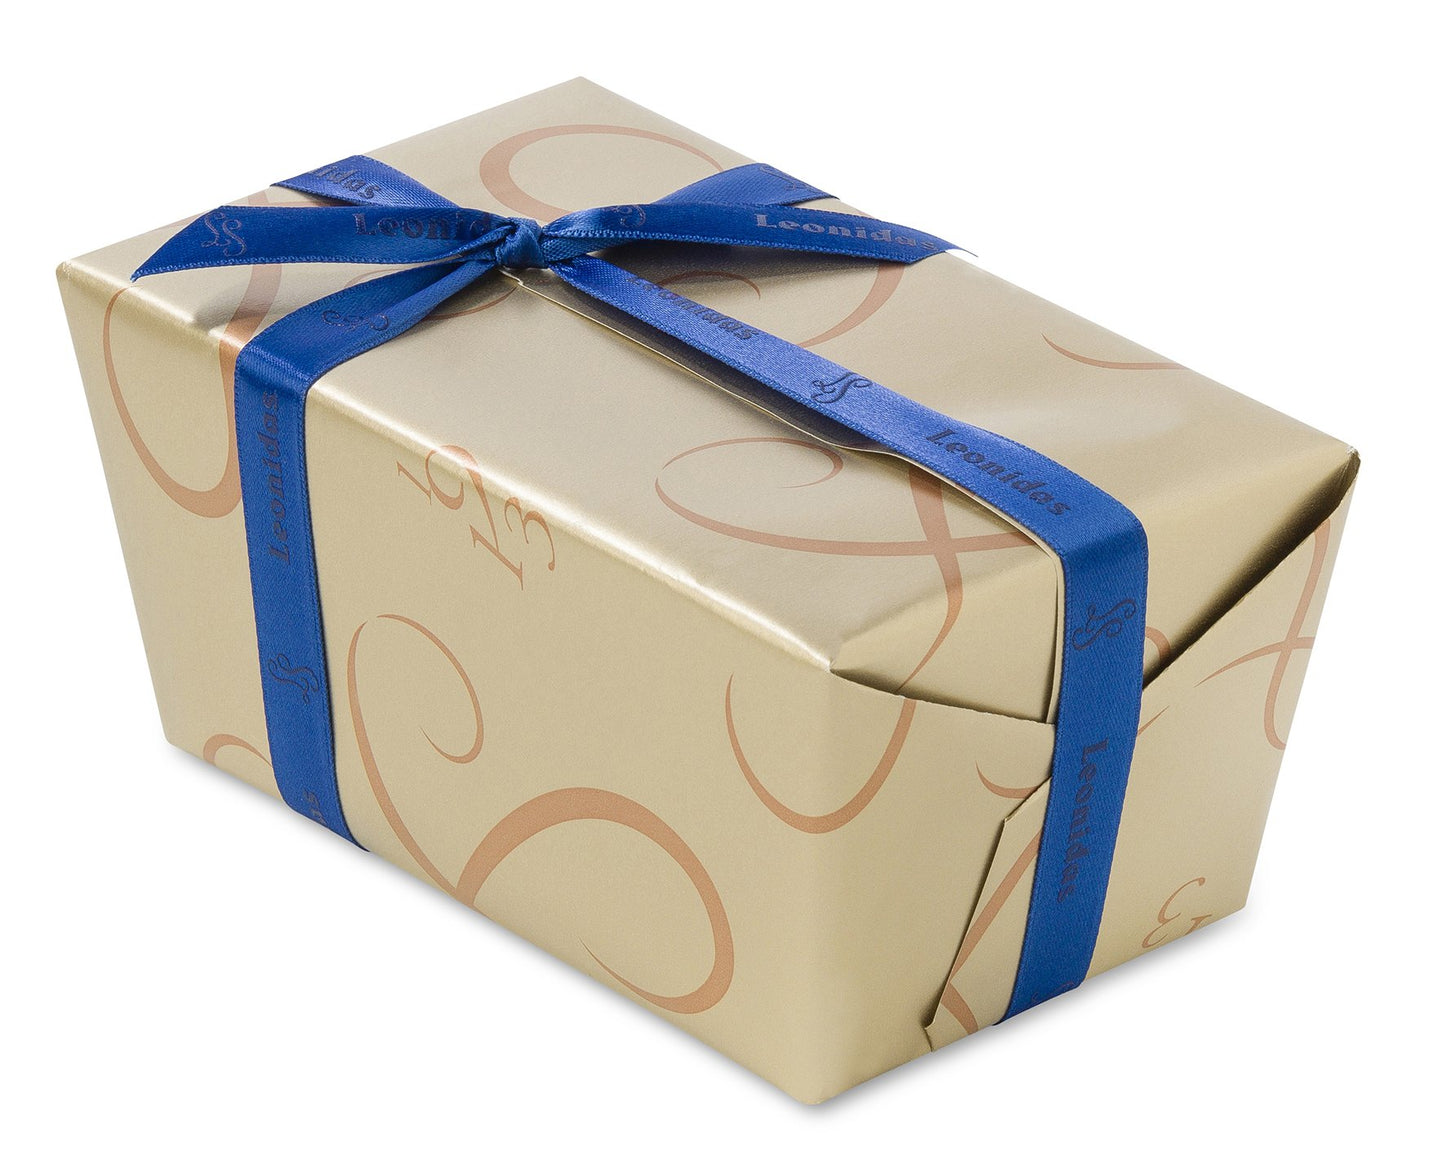 
                  
                    Leonidas KOSHER - WHITE Chocolates Ballotin Box by weight - leonidasbrighton.co.uk - Leonidas Brighton
                  
                